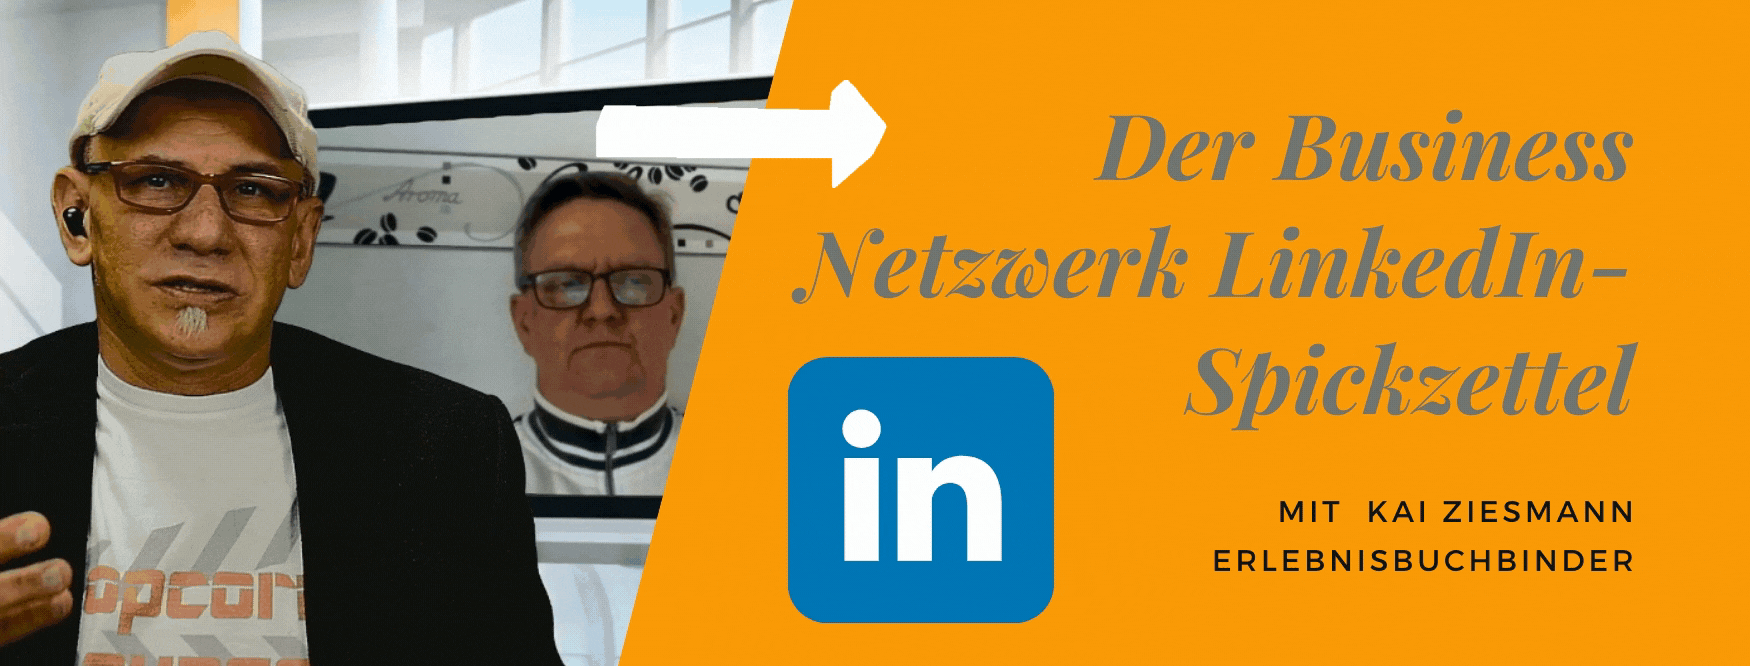 Der Business Netzwerk LinkedIn-Spickzettel mit Kai Ziesmann Erlebnisbuchbinder